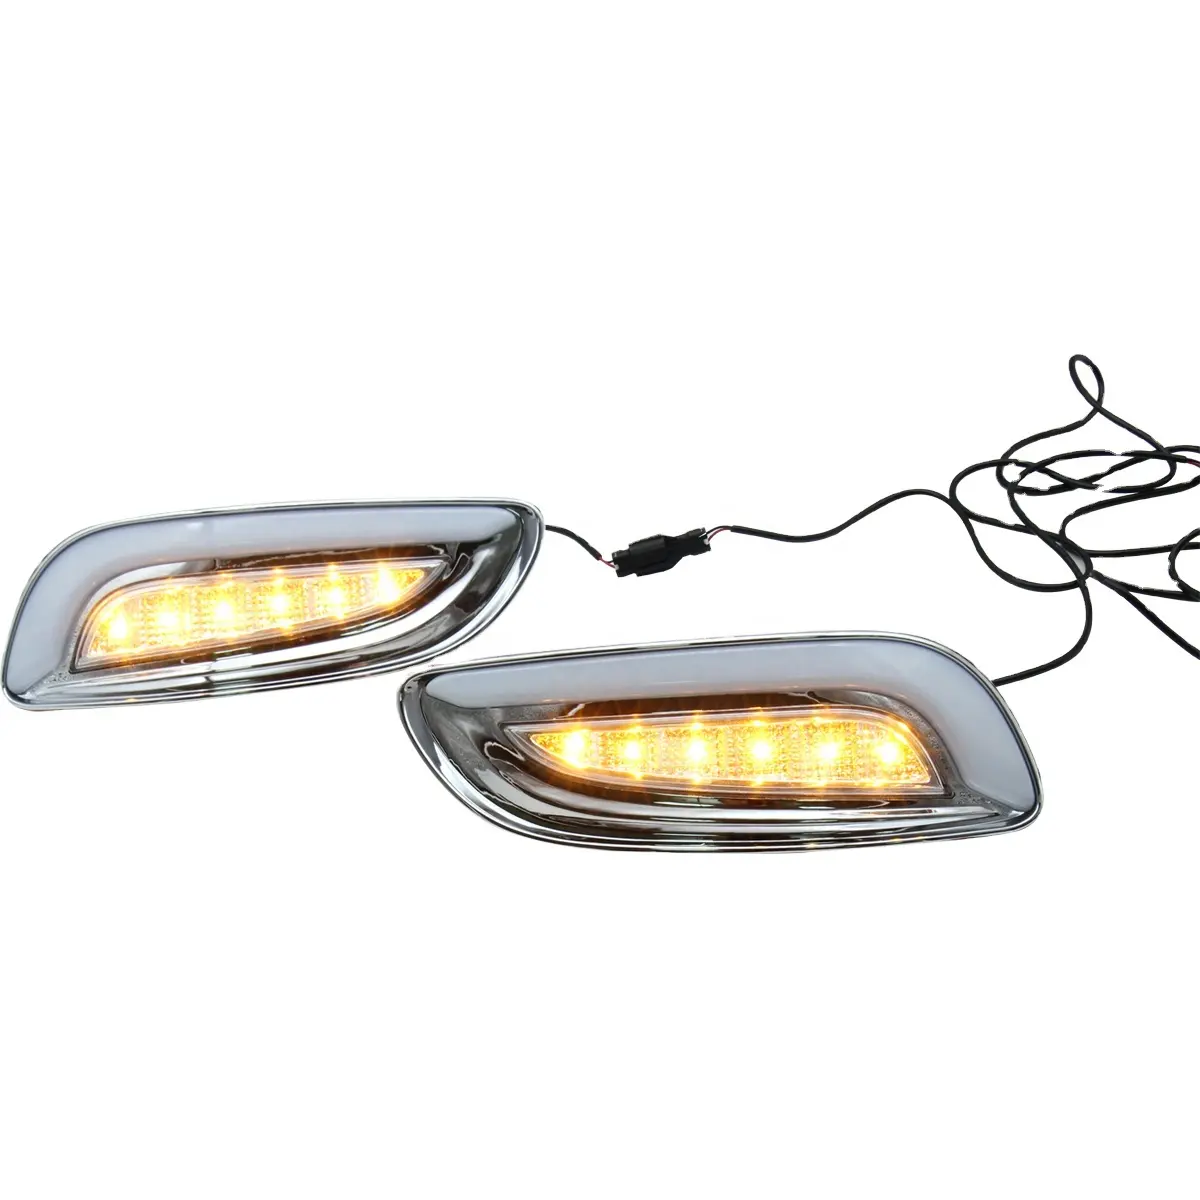 LED Spezial auto Drl Sicherheit Fahrer licht Tagfahrlicht Für Lexus RX330 RX350 2003-2009 Mit gelbem Licht